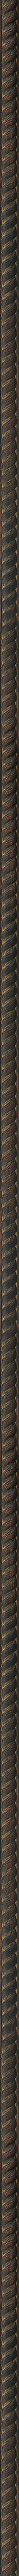 Σκαλιστή ντεκαπέ μαύρη κορνίζα frame